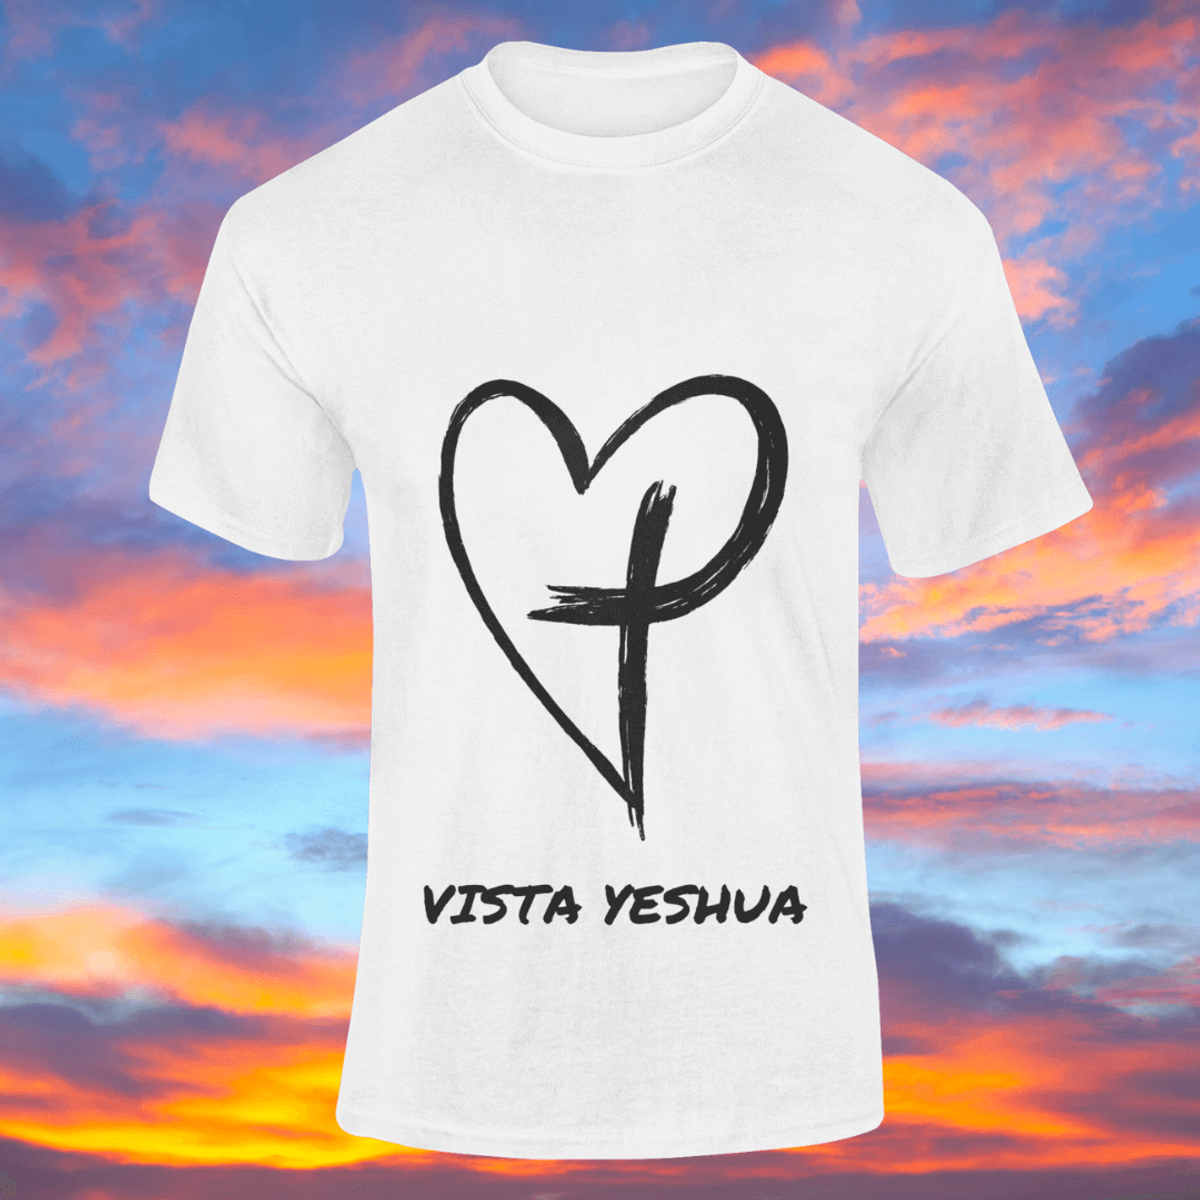 Nome do produto: Coleção Vista Yeshua - Cruz - T-Shirt Classic